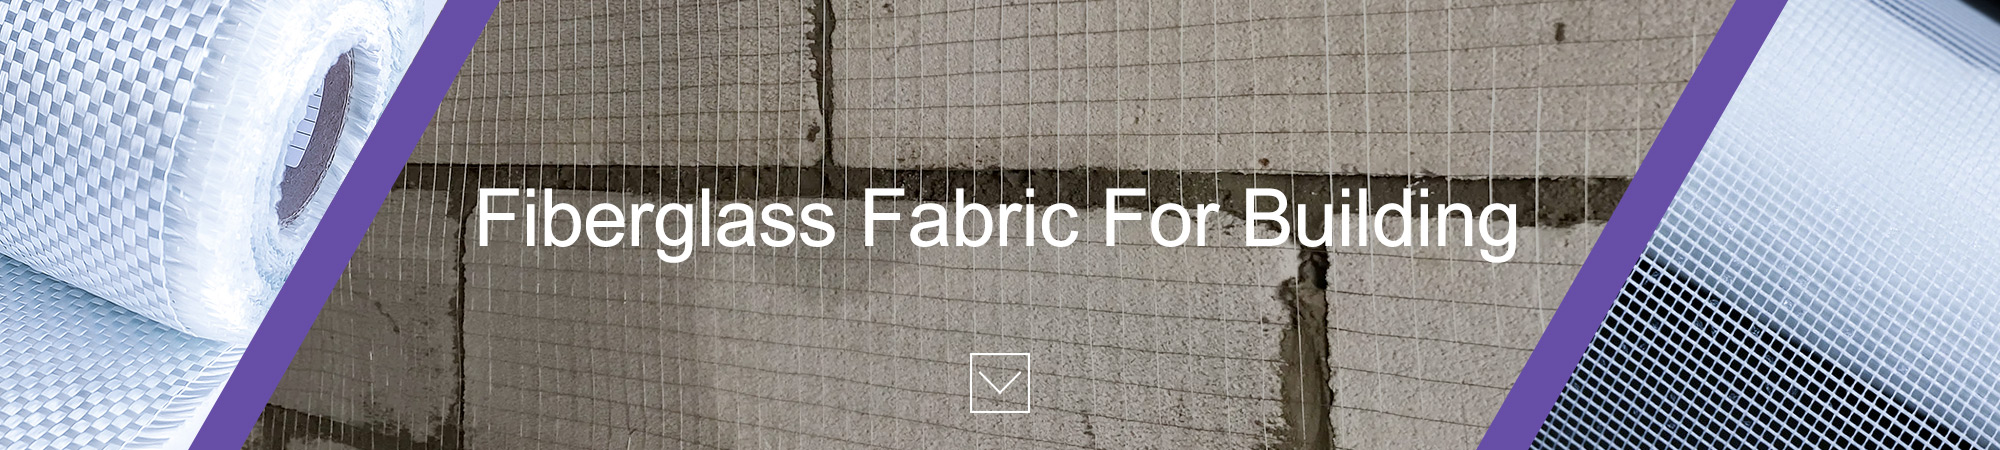 fiberglass fabric for building